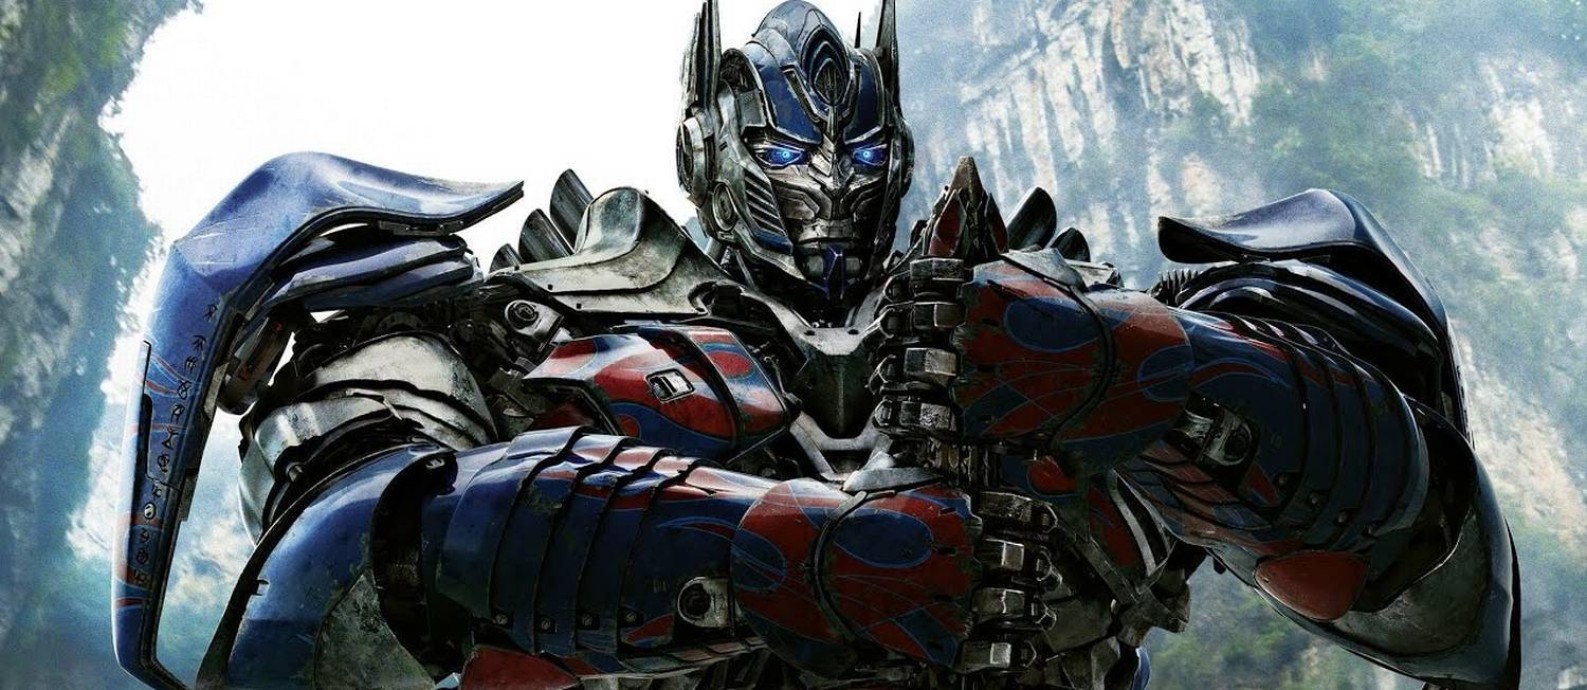 Filme: Transformers - O Último Cavaleiro